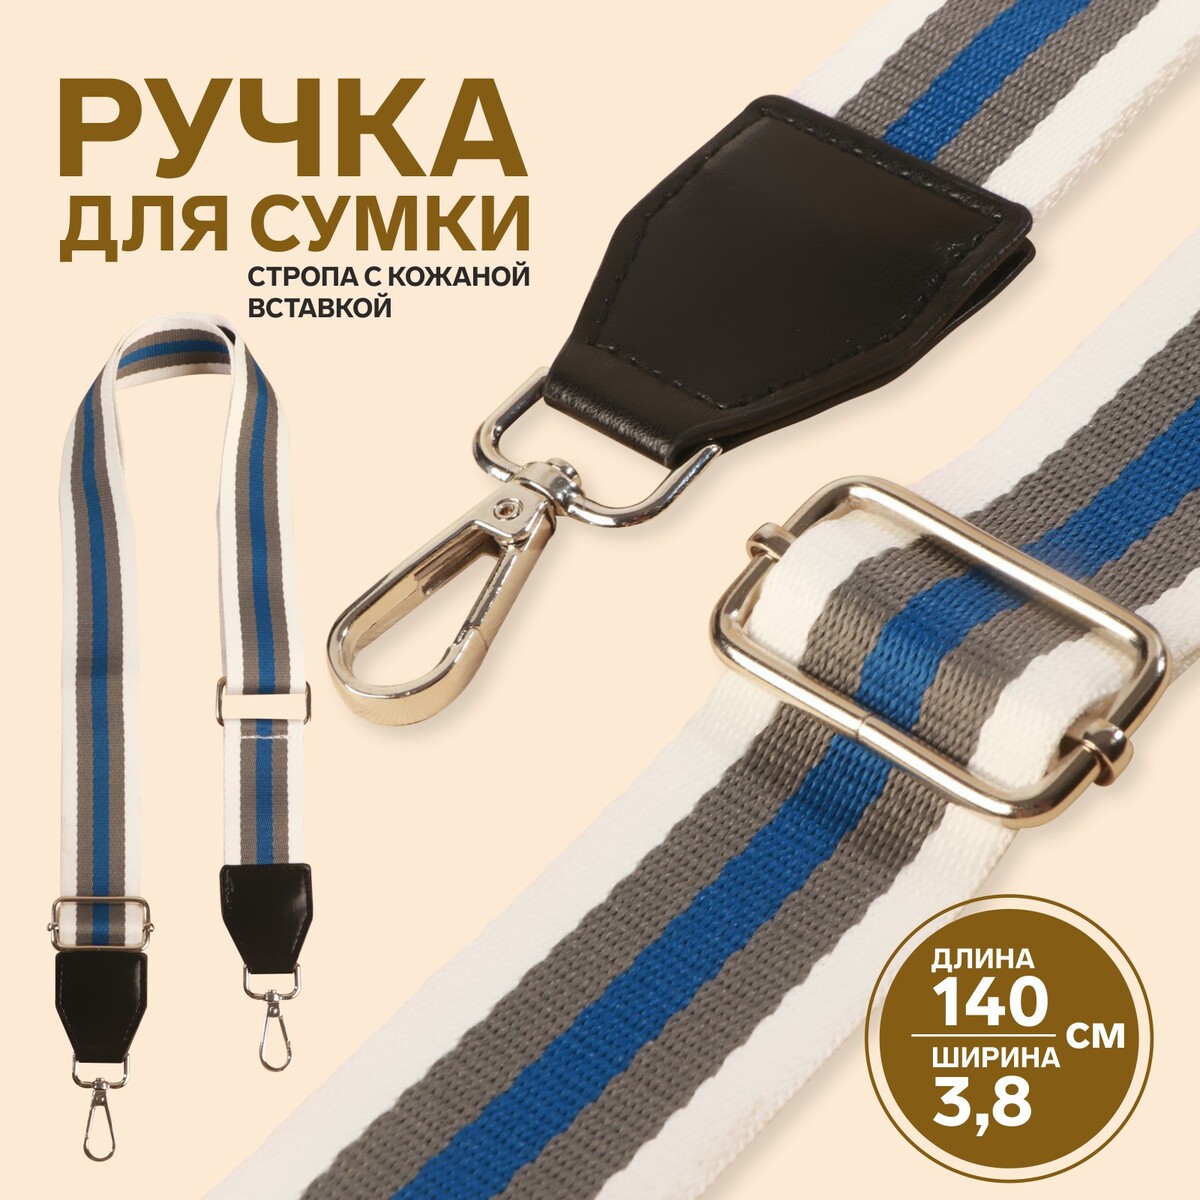 Ручка для сумки, стропа с кожаной вставкой, 140 × 3,8 см, цвет белый/серый/синий грабли со вставкой